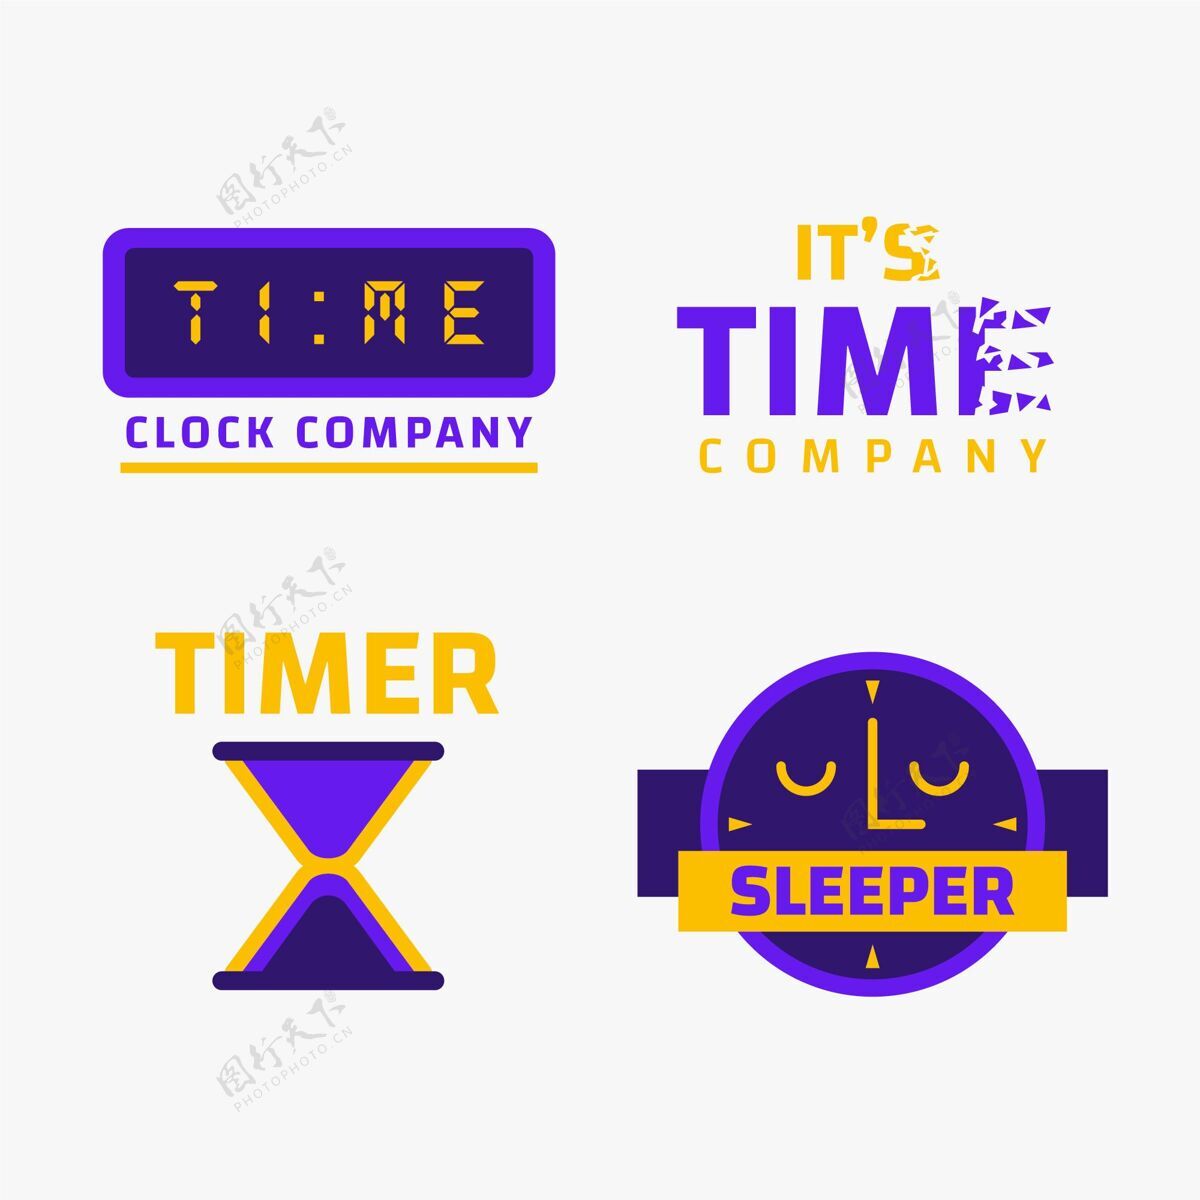 品牌时间标志模板集时间标识企业标识